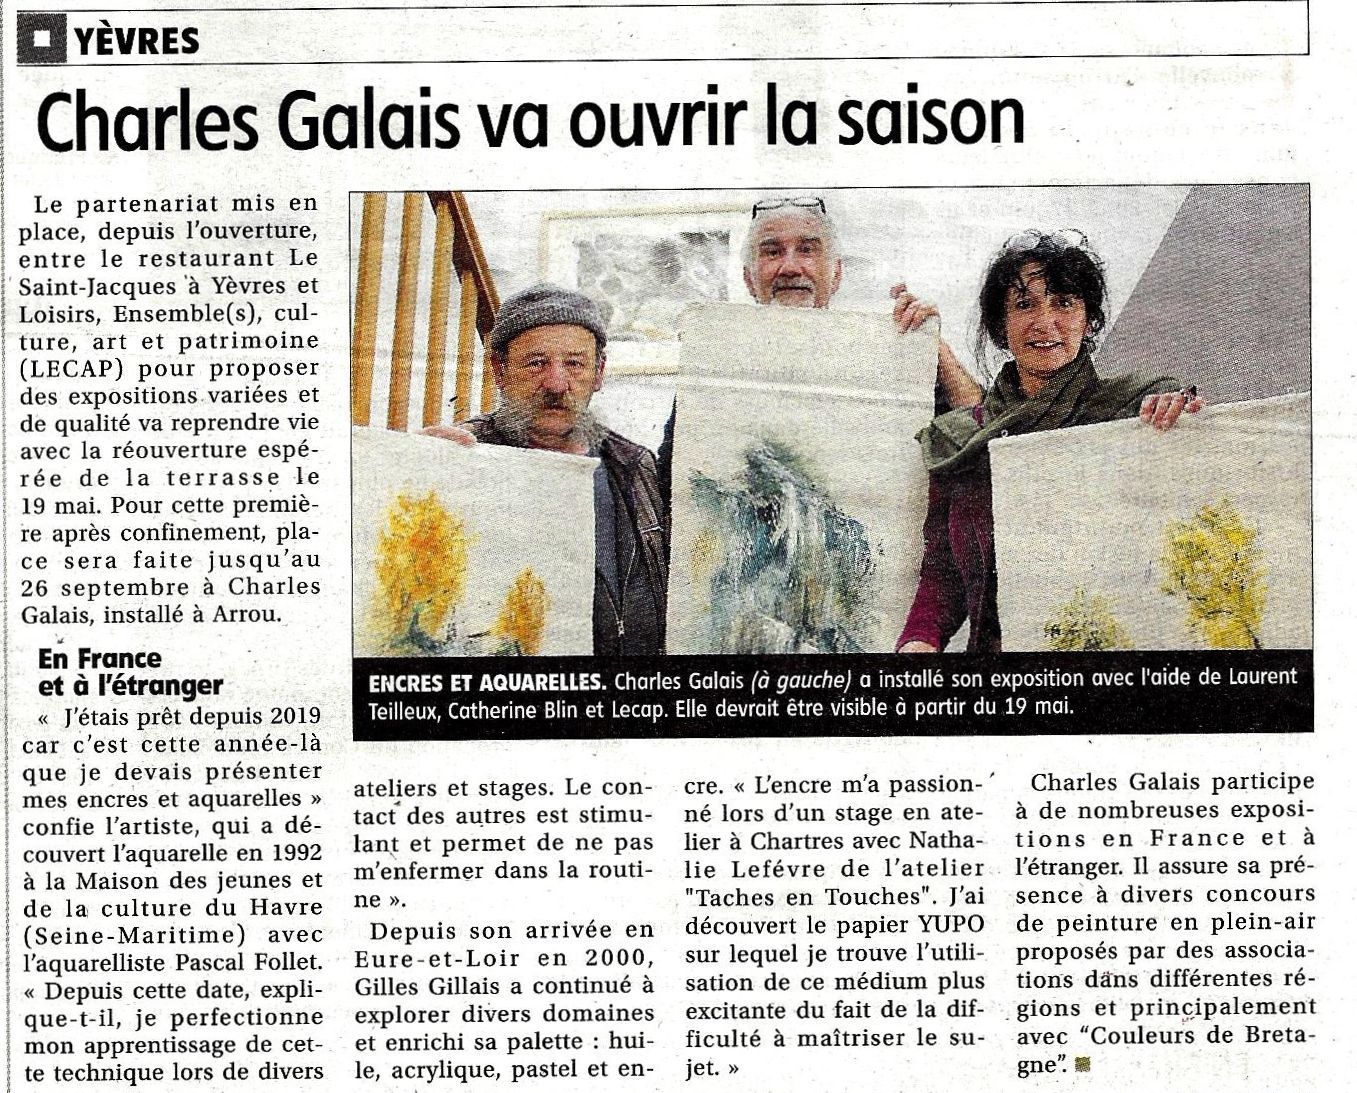 Charles Galais expose au restaurant le Saint-Jacques à Yèvres